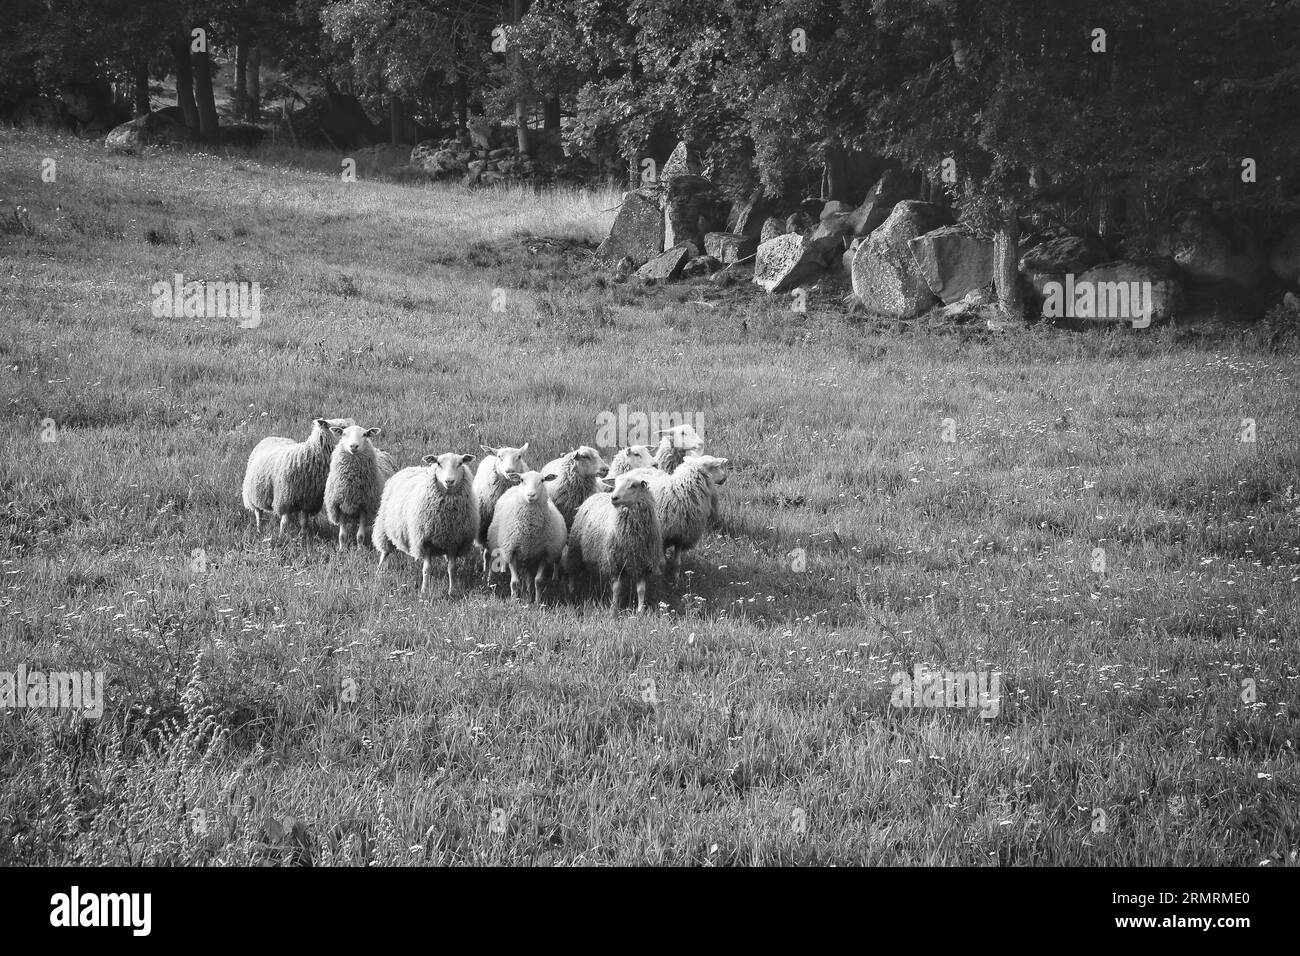 Troupeau de moutons sur une prairie verte d'herbe prise en noir et blanc. Paysage scandinave. Animal de ferme avec laine. Tir d'animal Banque D'Images